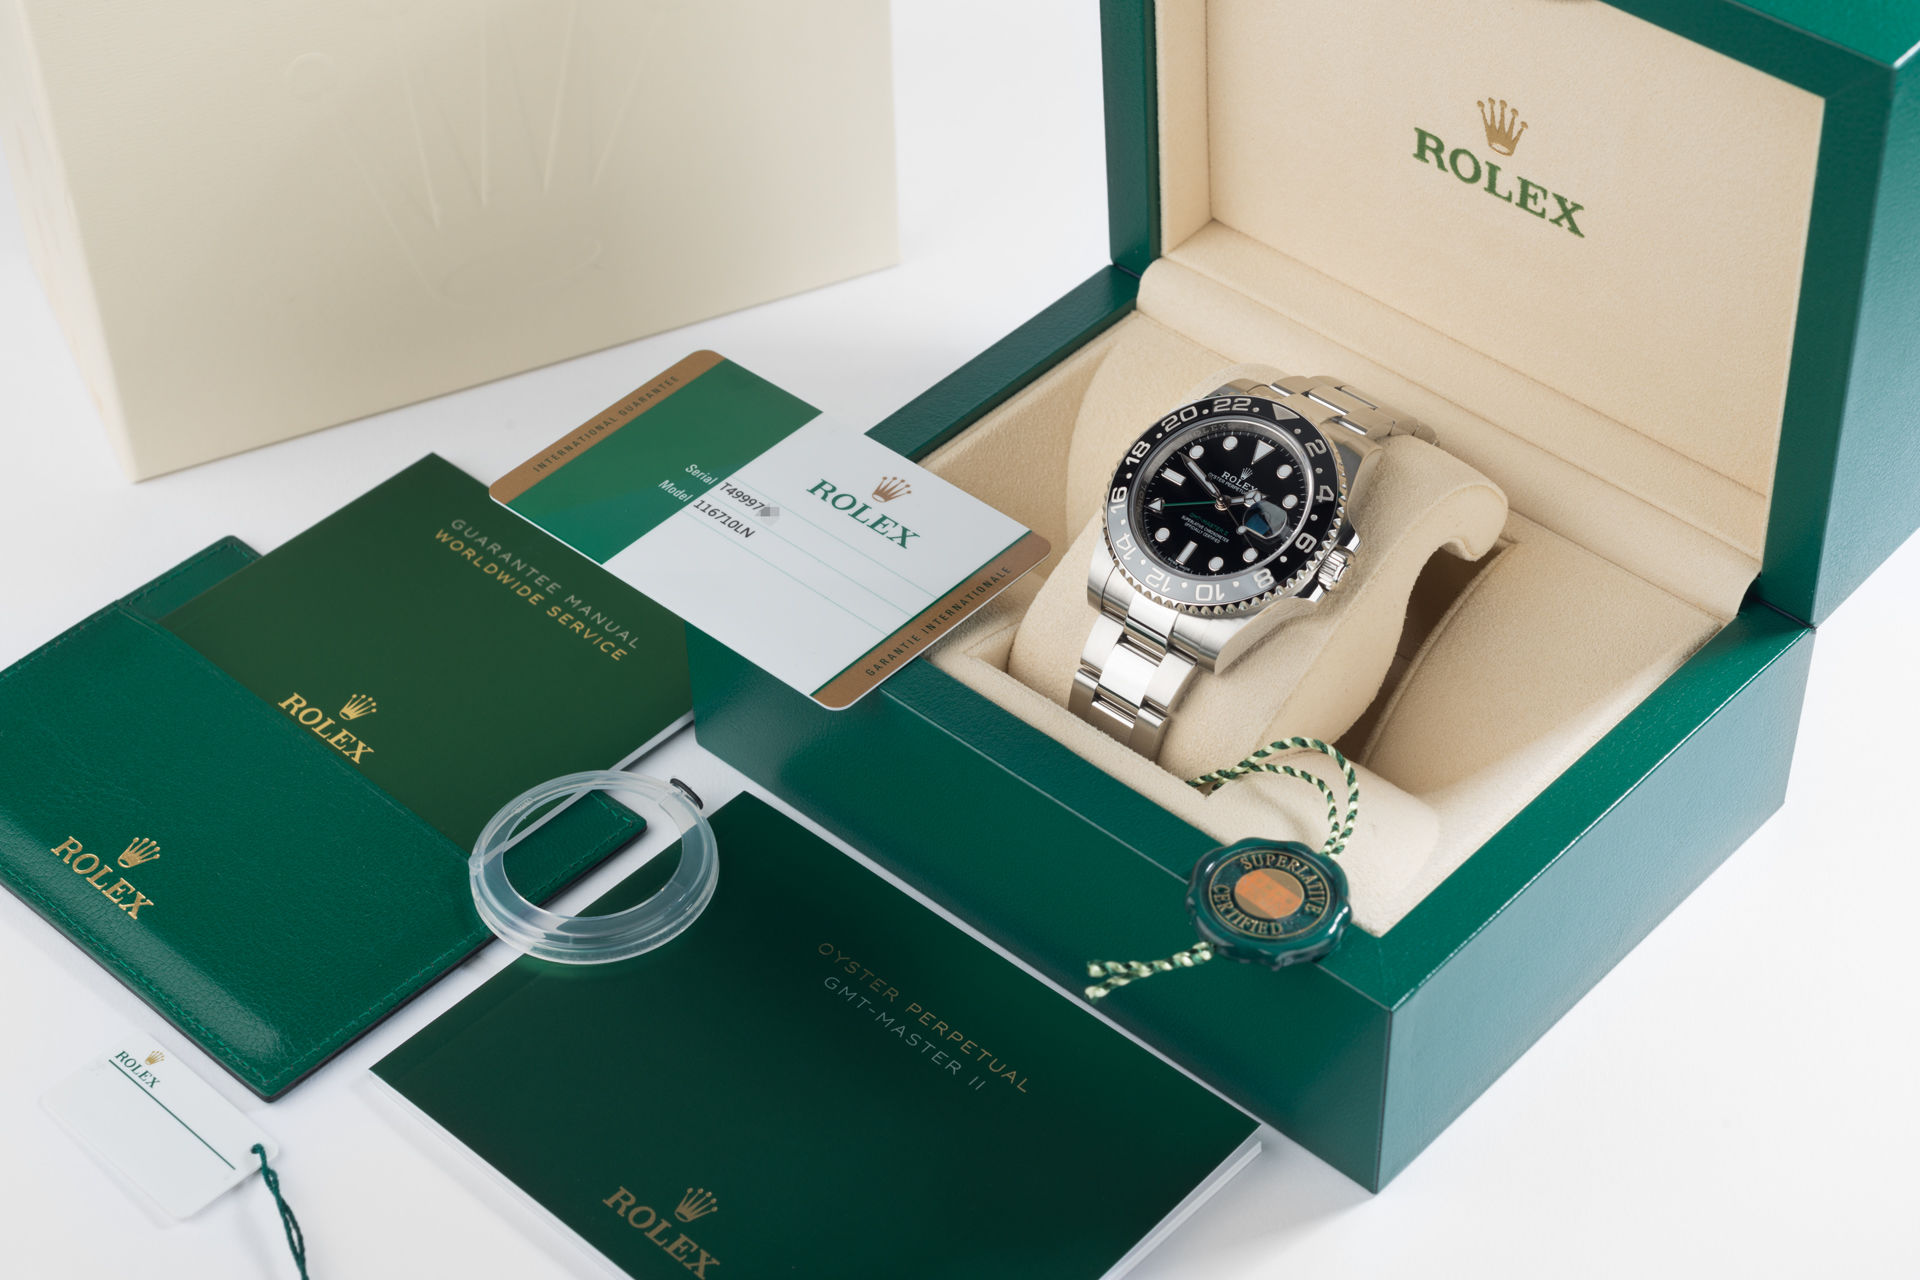 ref 116710LN | 5 Year Rolex Warranty | Rolex GMT-Master II